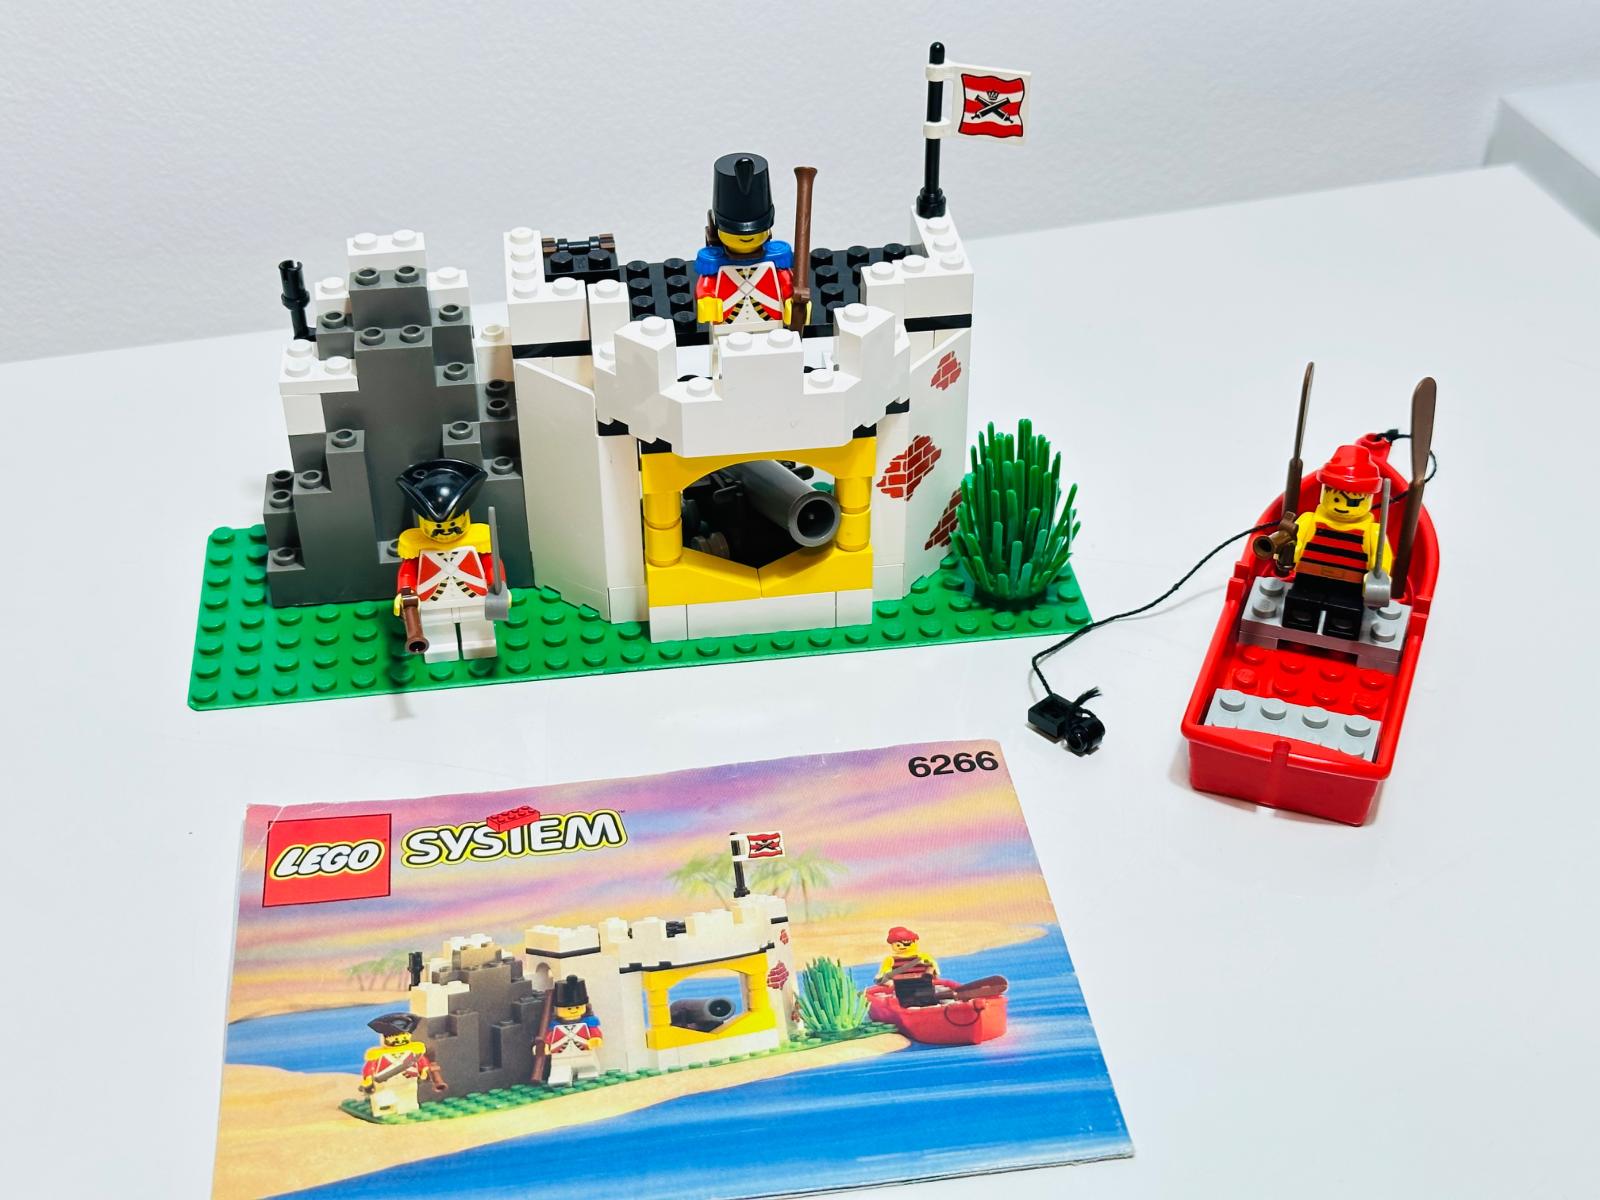 LEGO Pirates Piráti Imperial Guards 6266 Cannon Cove z roku 1993 - Hračky